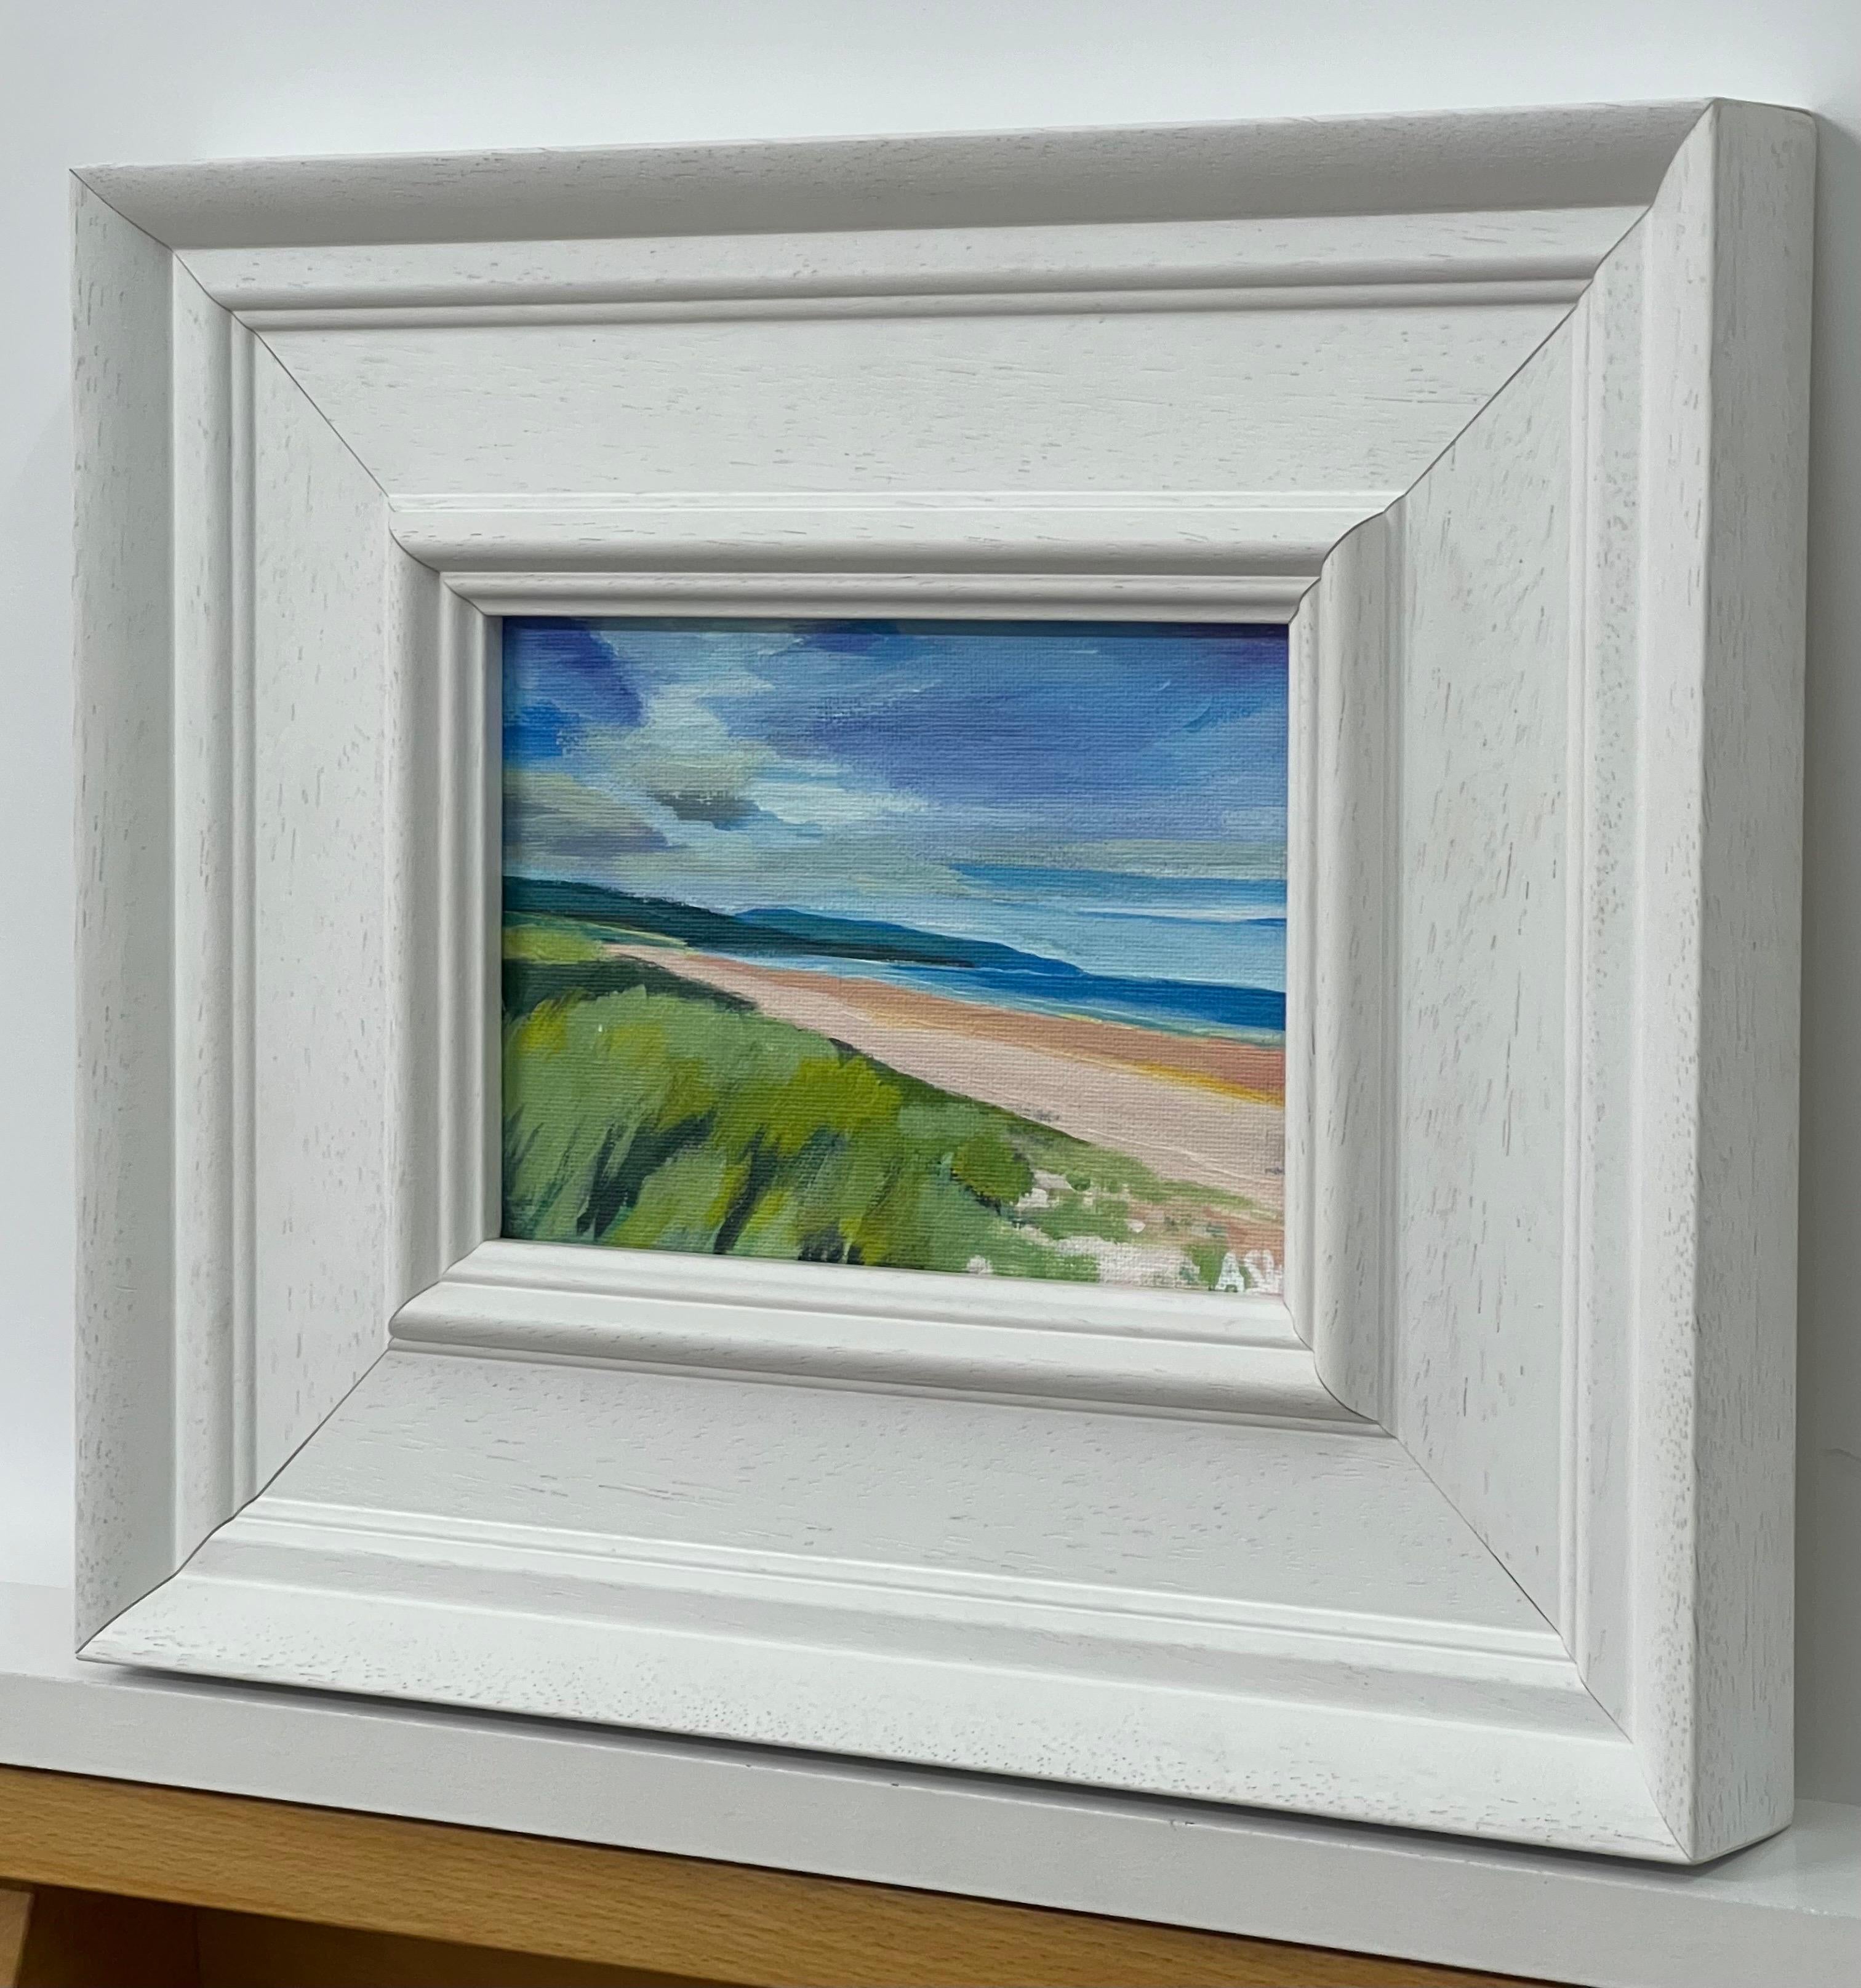 Paysage de plage miniature de la côte est des Highlands écossais par l'artiste britannique contemporaine Angela Wakefield. Plage de Brora, Écosse. 

L'œuvre d'art mesure 7 x 5 pouces
Le cadre mesure 12 x 10 pouces 

Angela Wakefield a fait deux fois